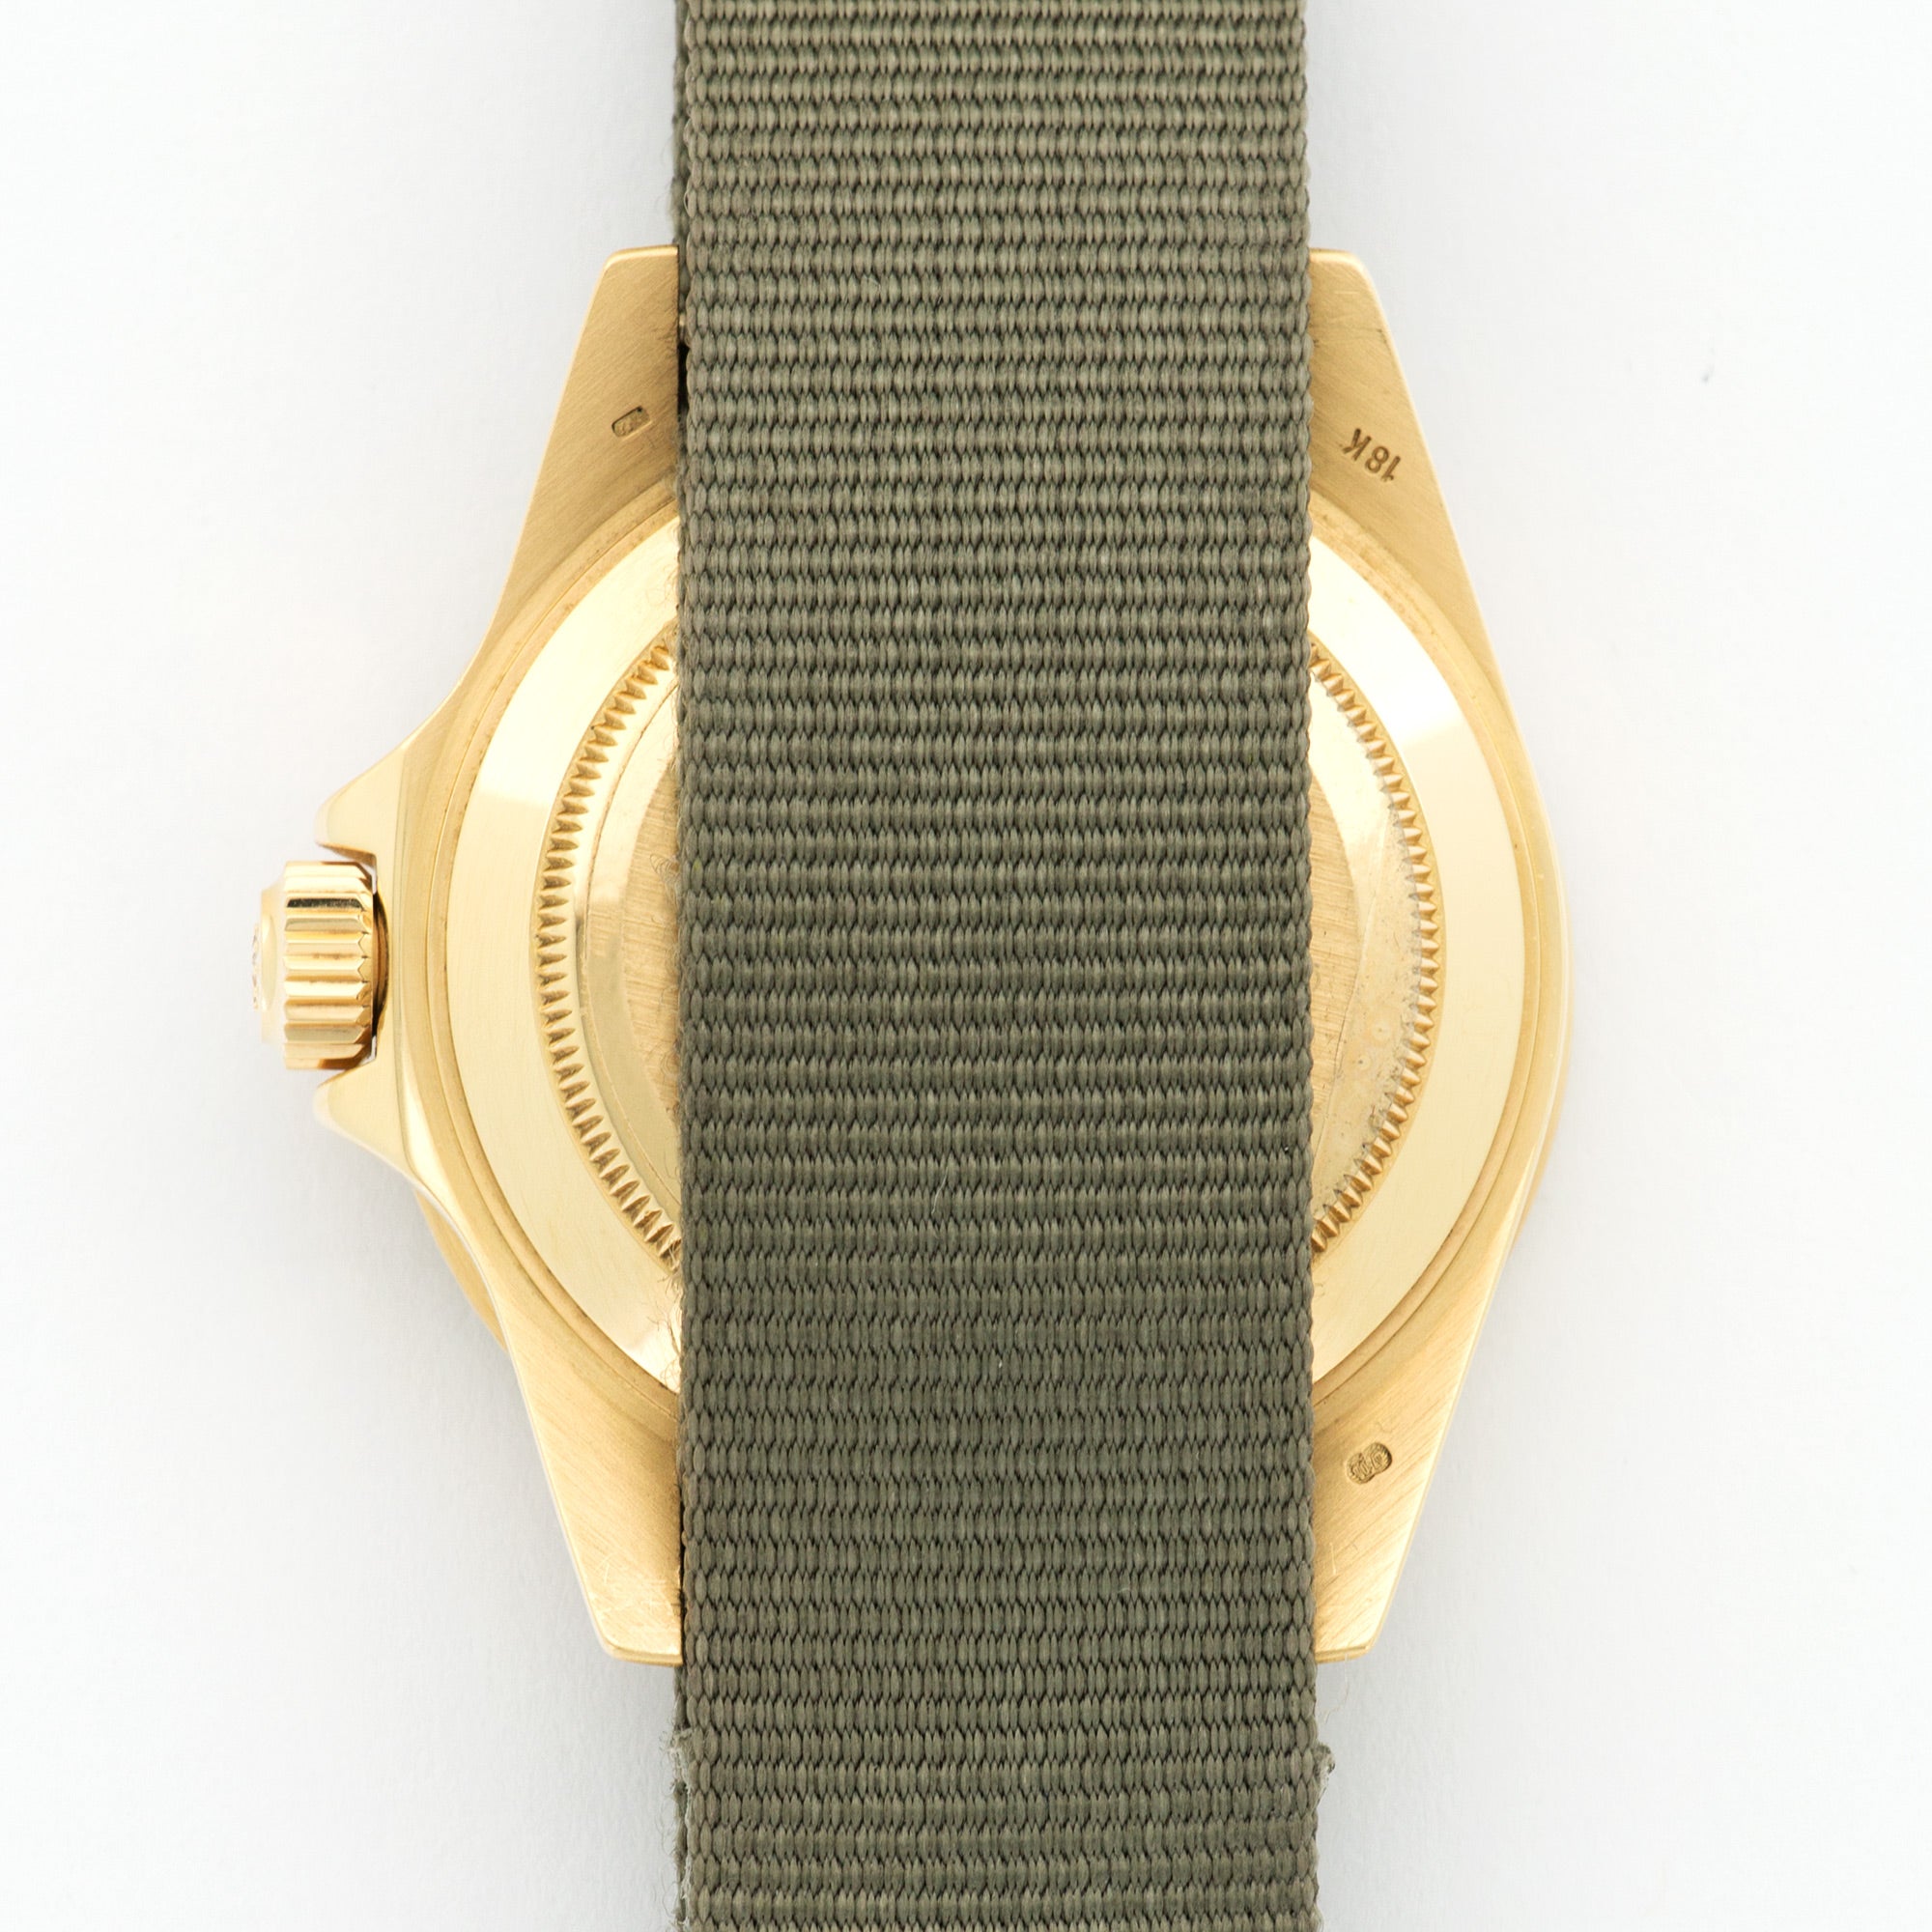 Rolex - Vintage Rolex Yellow Gold Submariner Ref. 16808 - The Keystone Watches